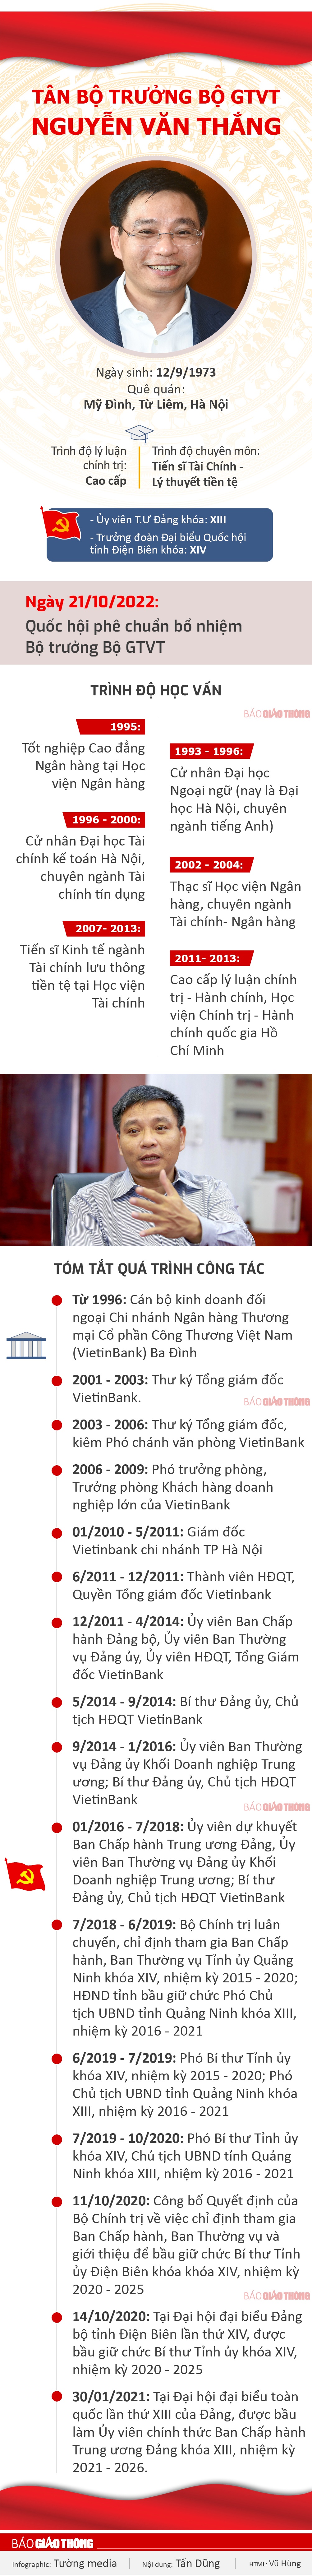 Infographic: Chân dung tân Bộ trưởng Bộ GTVT Nguyễn Văn Thắng - 1